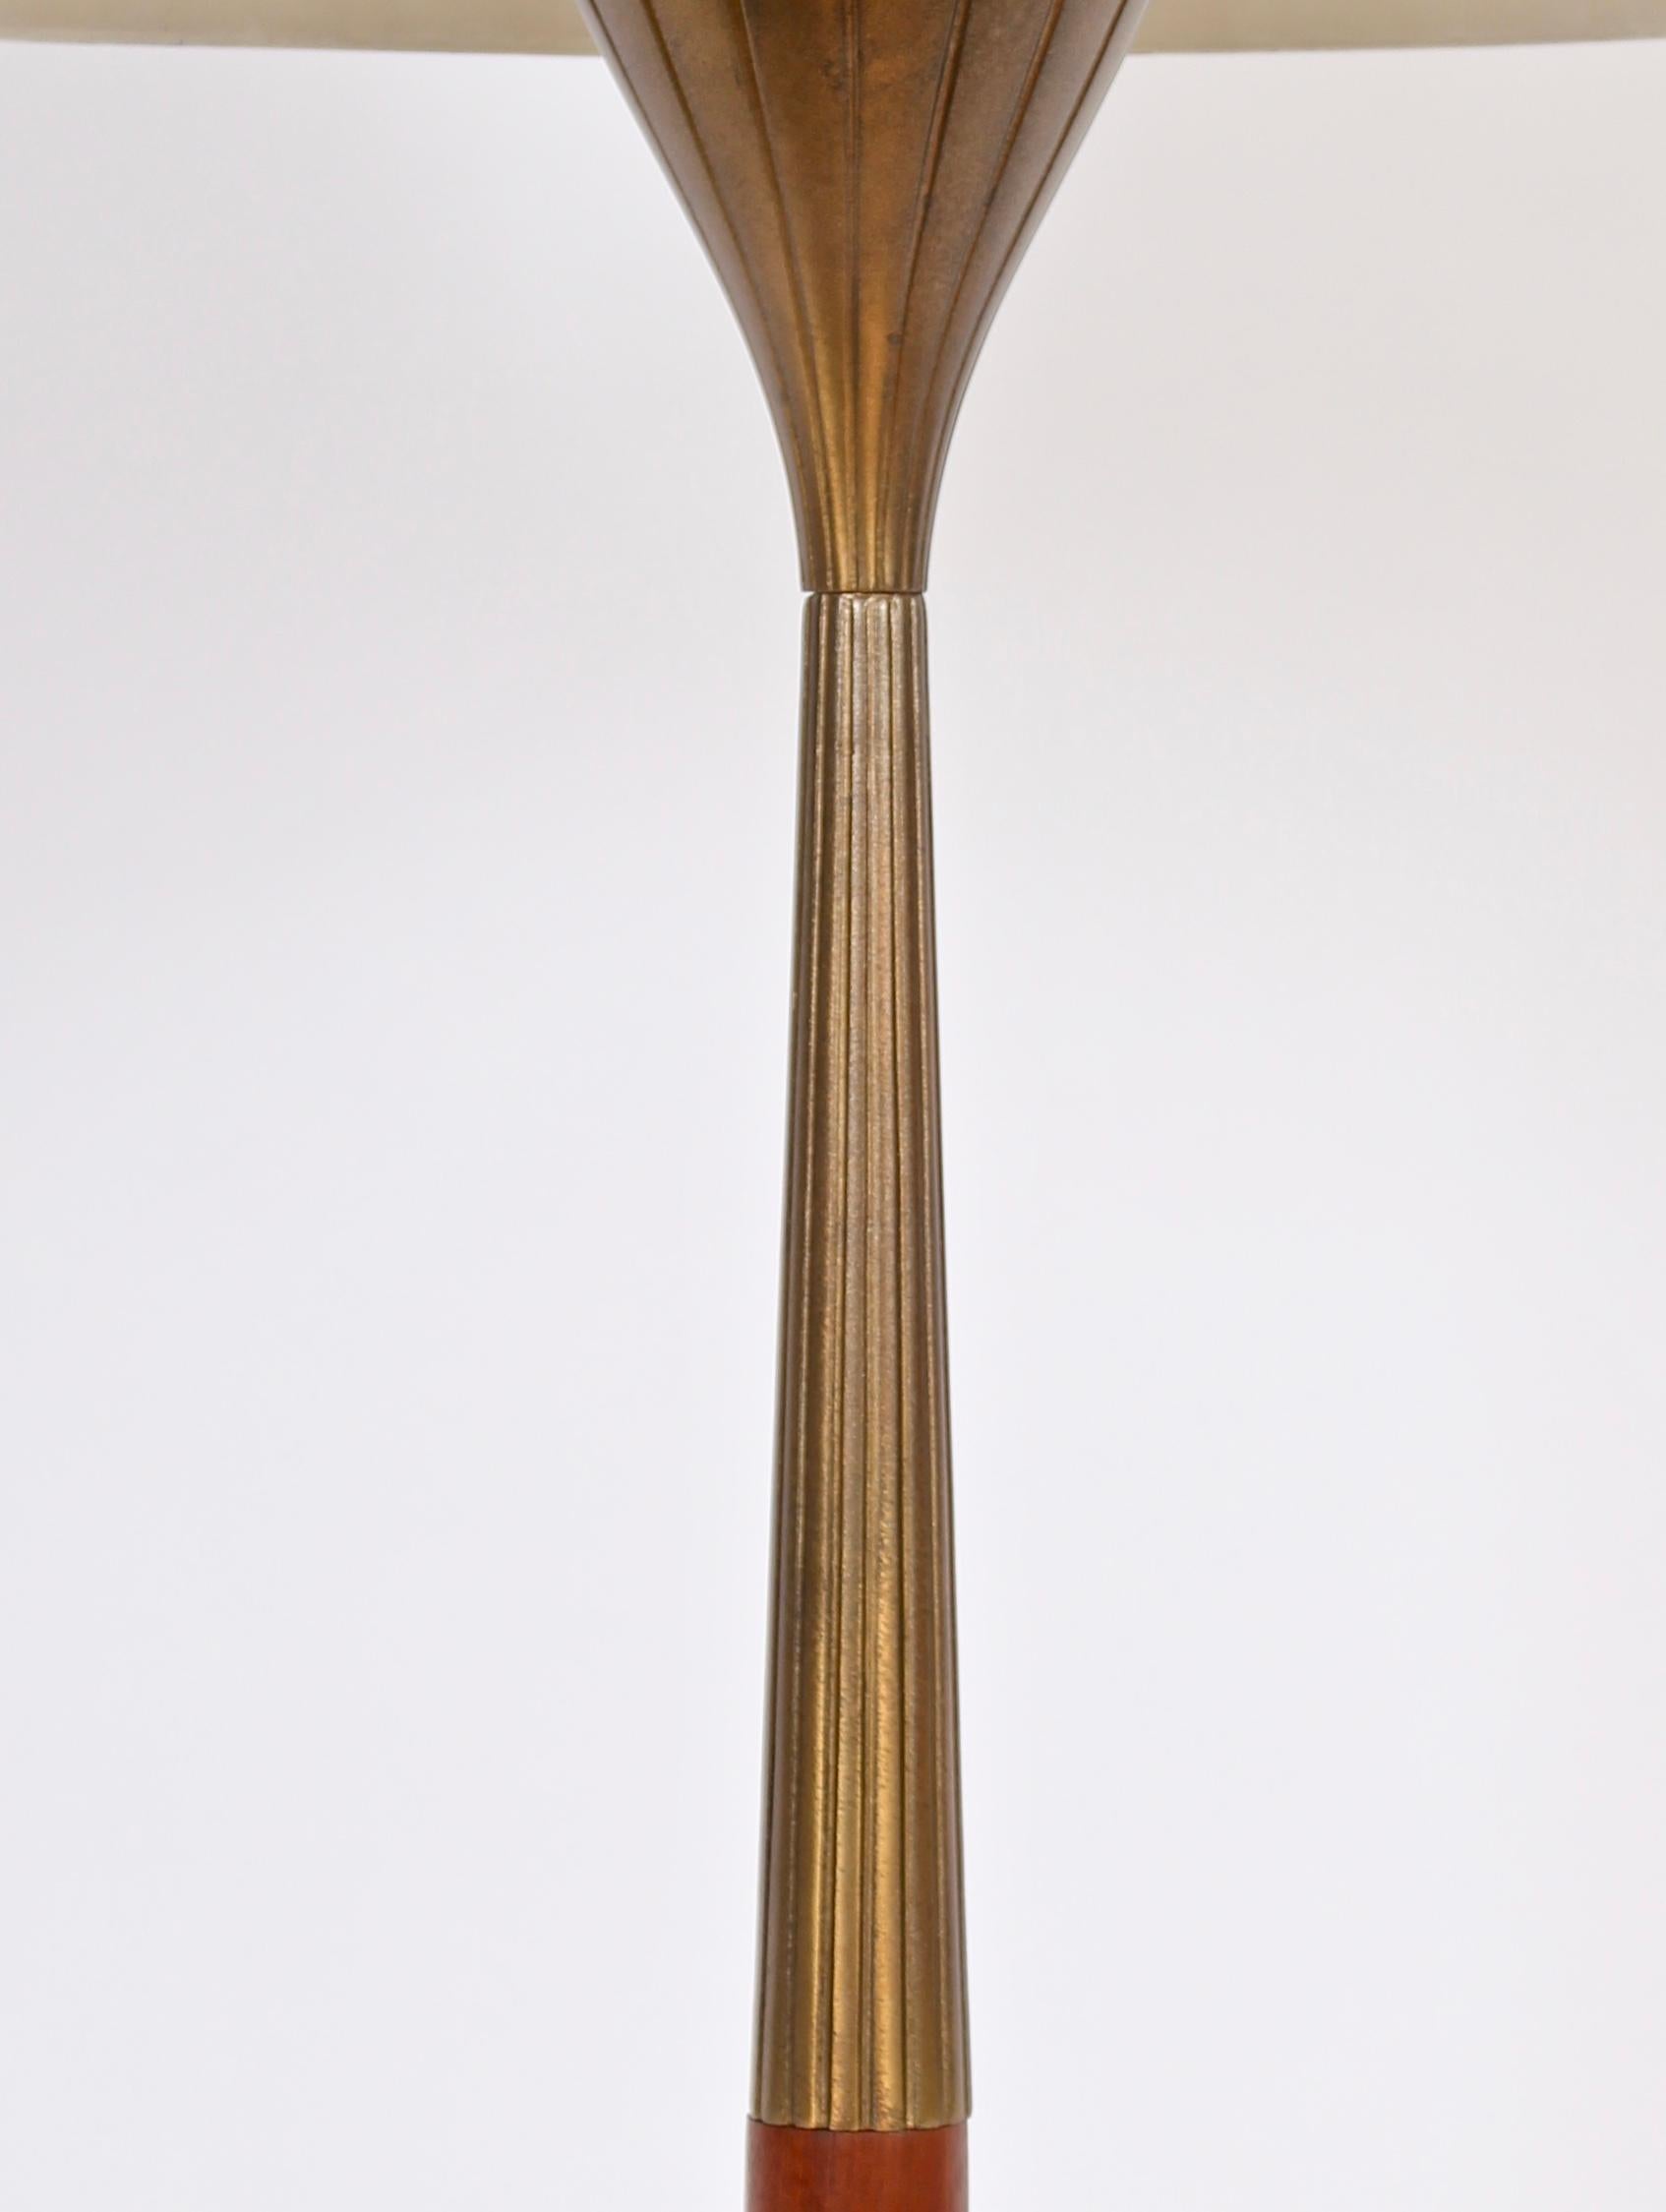 Enameled Tall Gerald Thurston for Lightolier Radiating Brass & Walnut Table Lamp For Sale